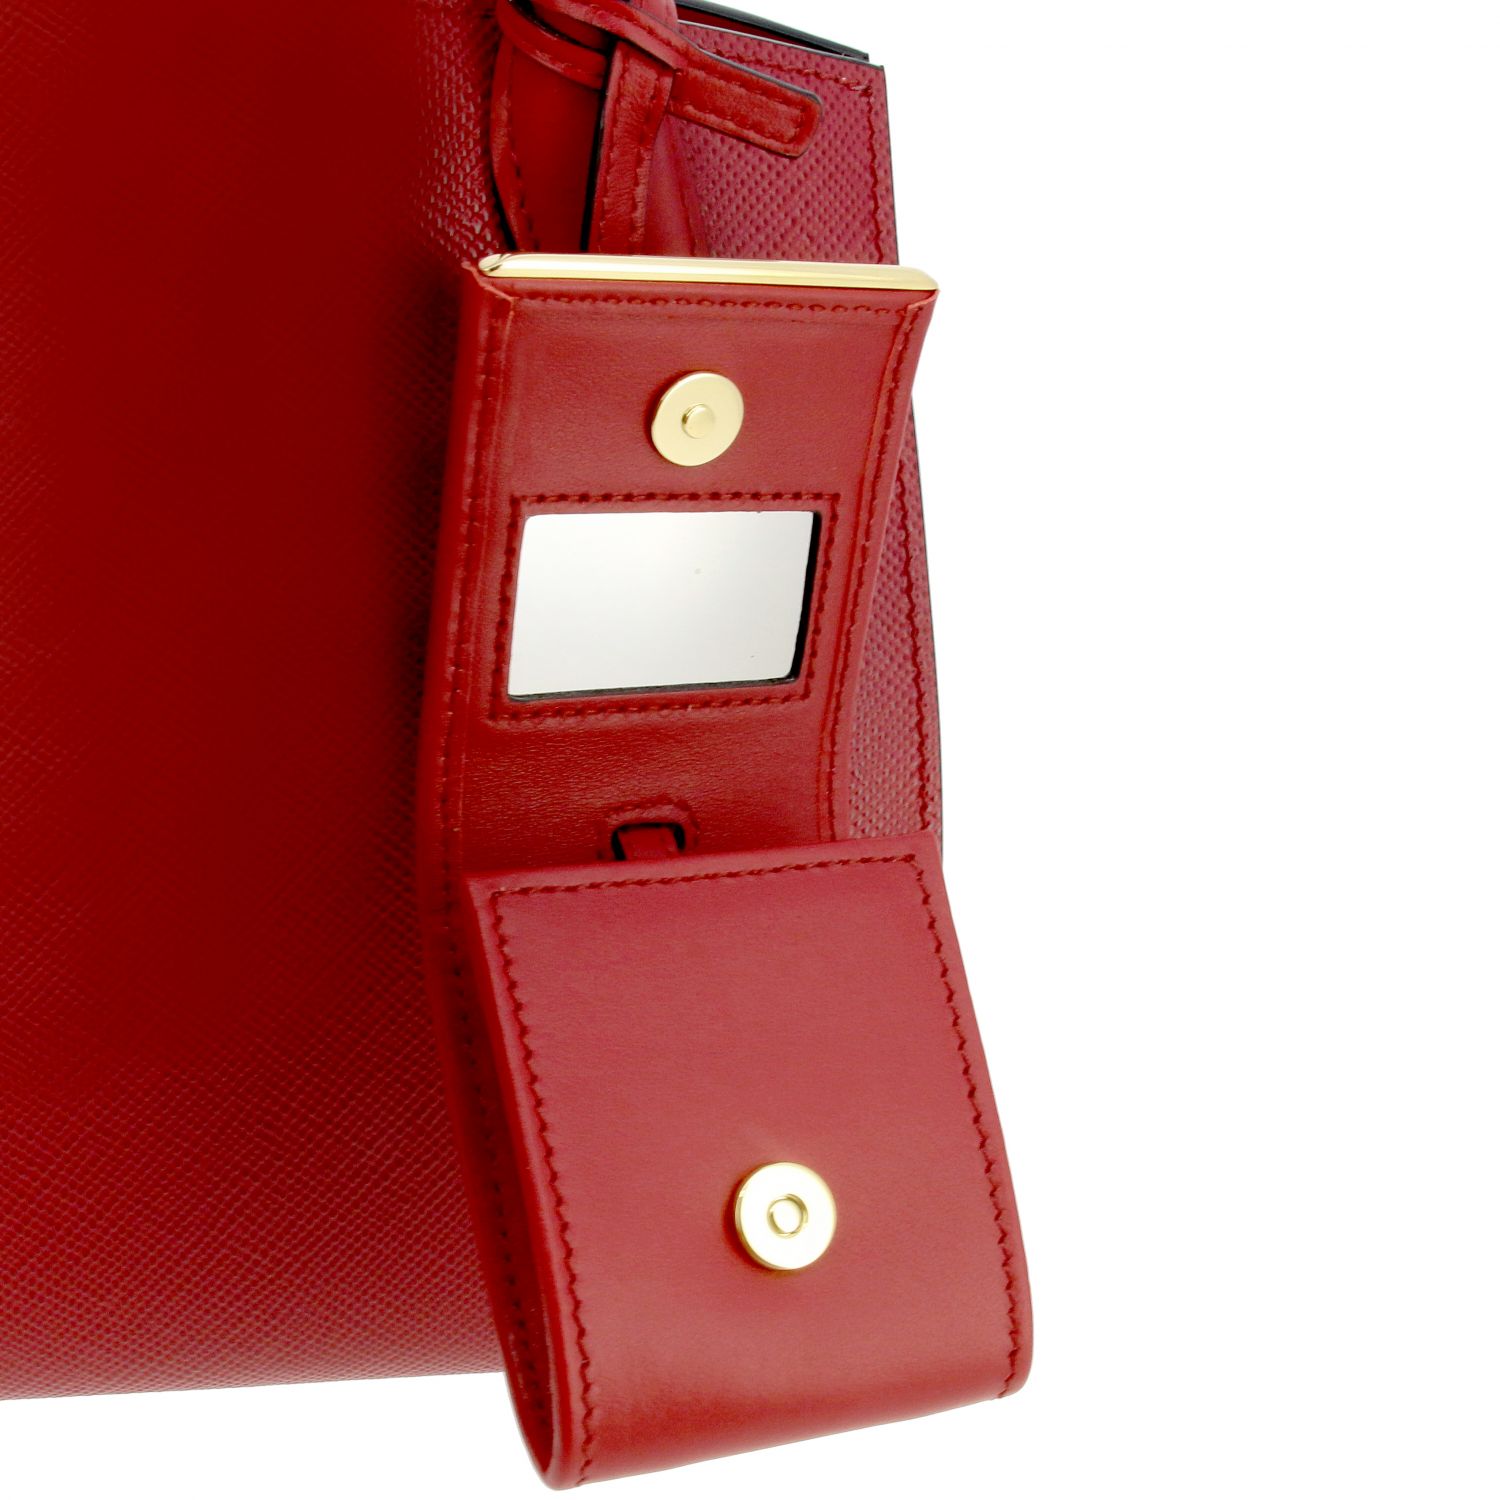 Handtasche Prada: Monochrome Tasche in Saffiano Leder Prada-Logo rot 4